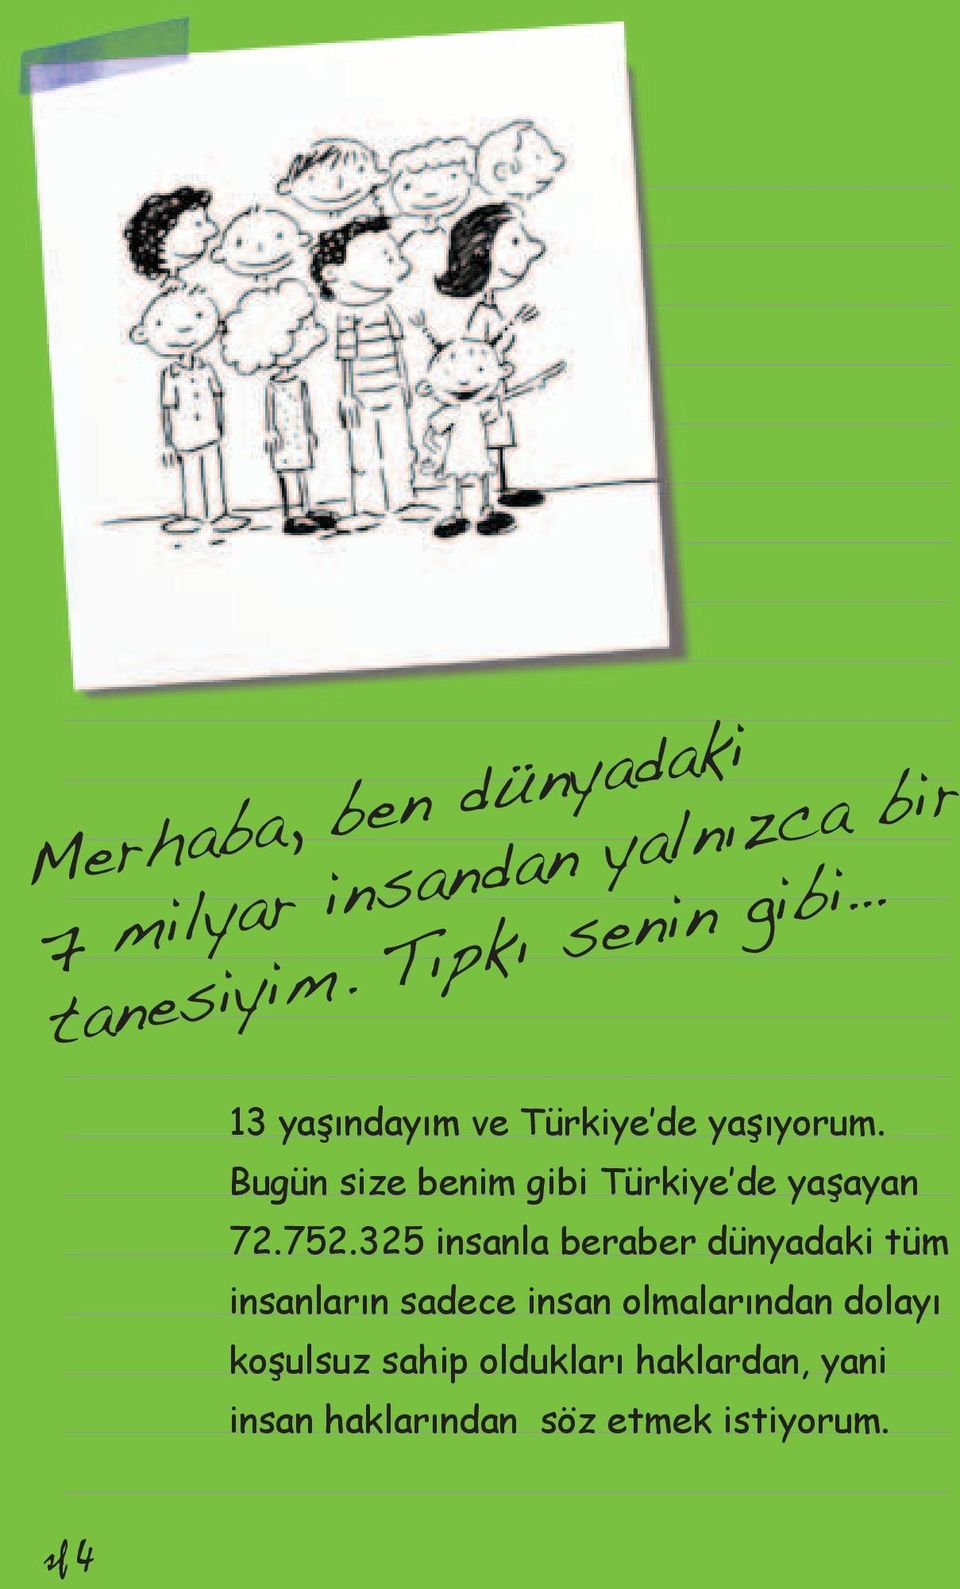 Bugün size benim gibi Türkiye de yaşayan 72.752.